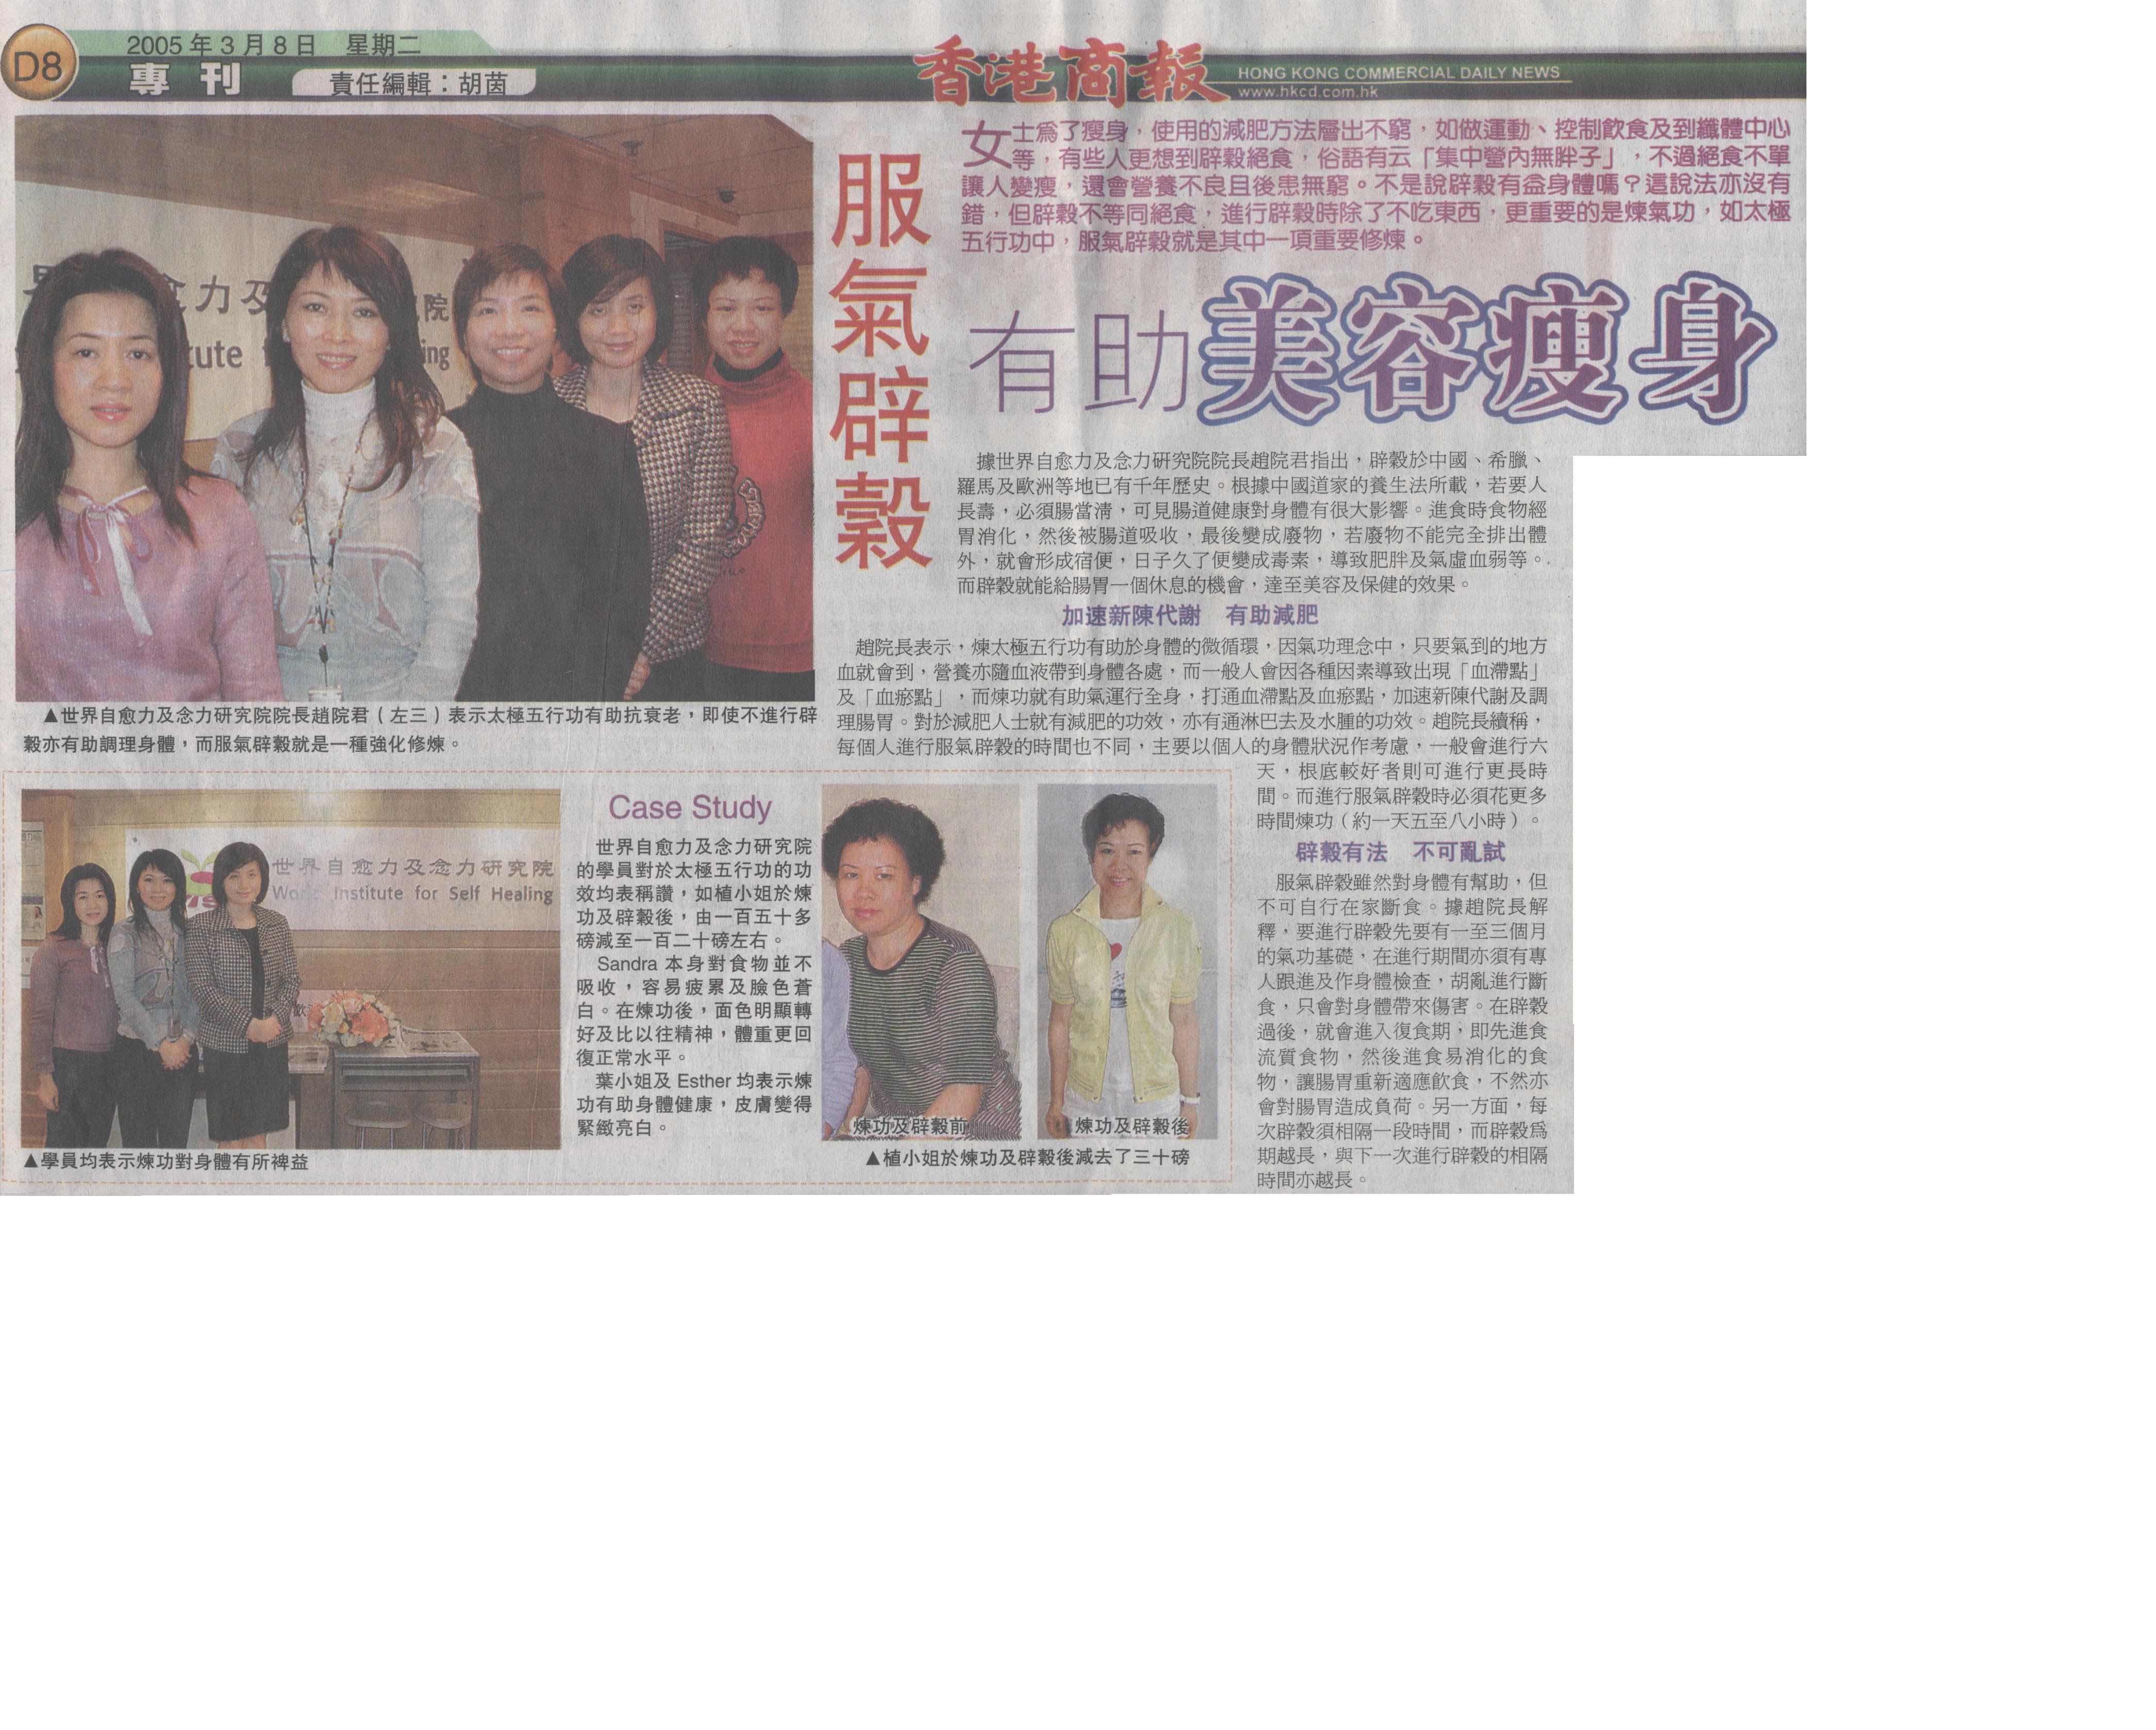 香港商報: 2005年3月8日 (服氣辟穀 有助美容瘦身)